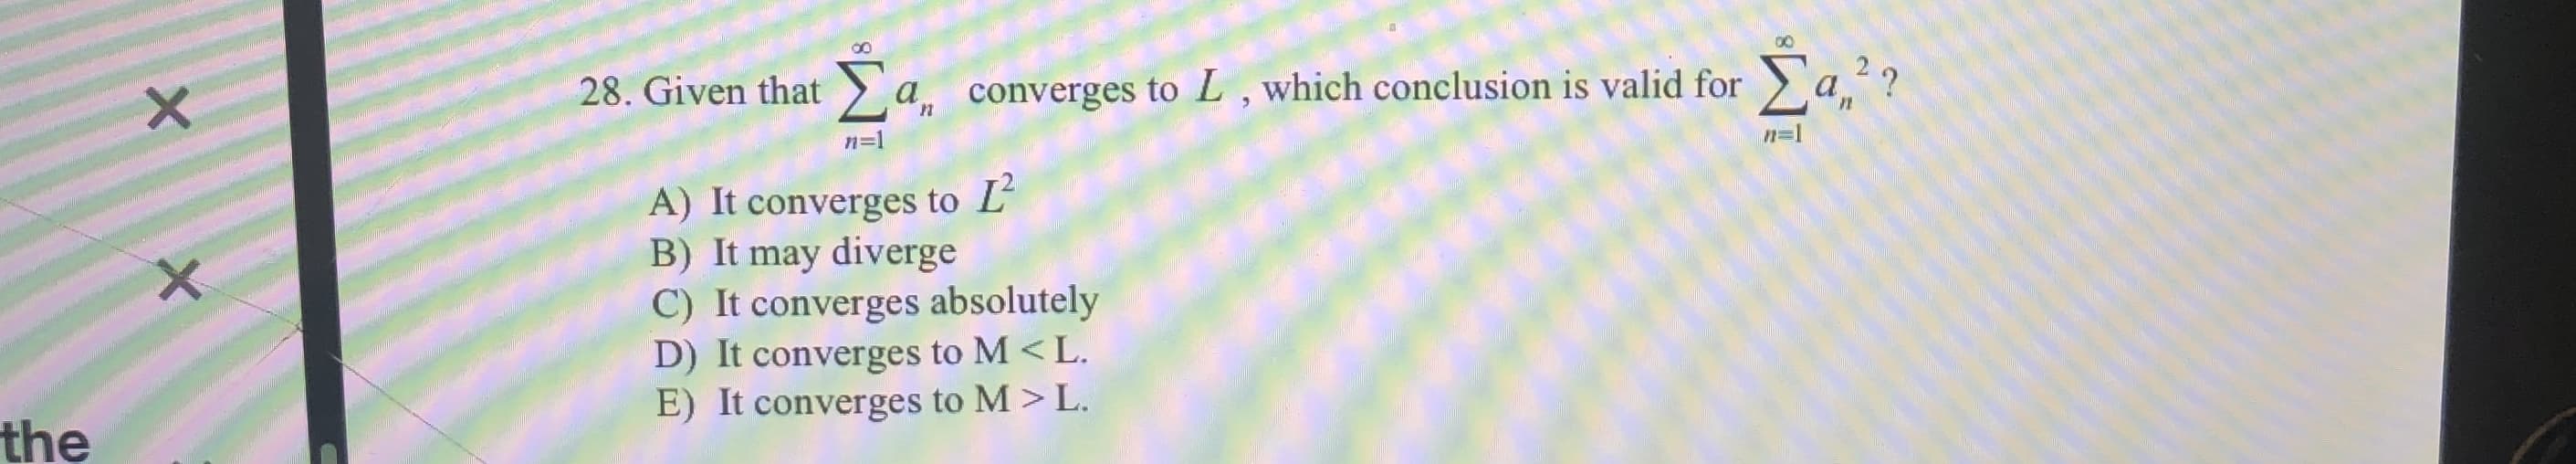 00
Σα
Σα
?
28. Given that
converges to L, which conclusion is valid for
a
n=
n-1
A) It converges to L
B) It may diverge
C) It converges absolutely
D) It converges to M < L
E) It converges to M > L.
the
X X
